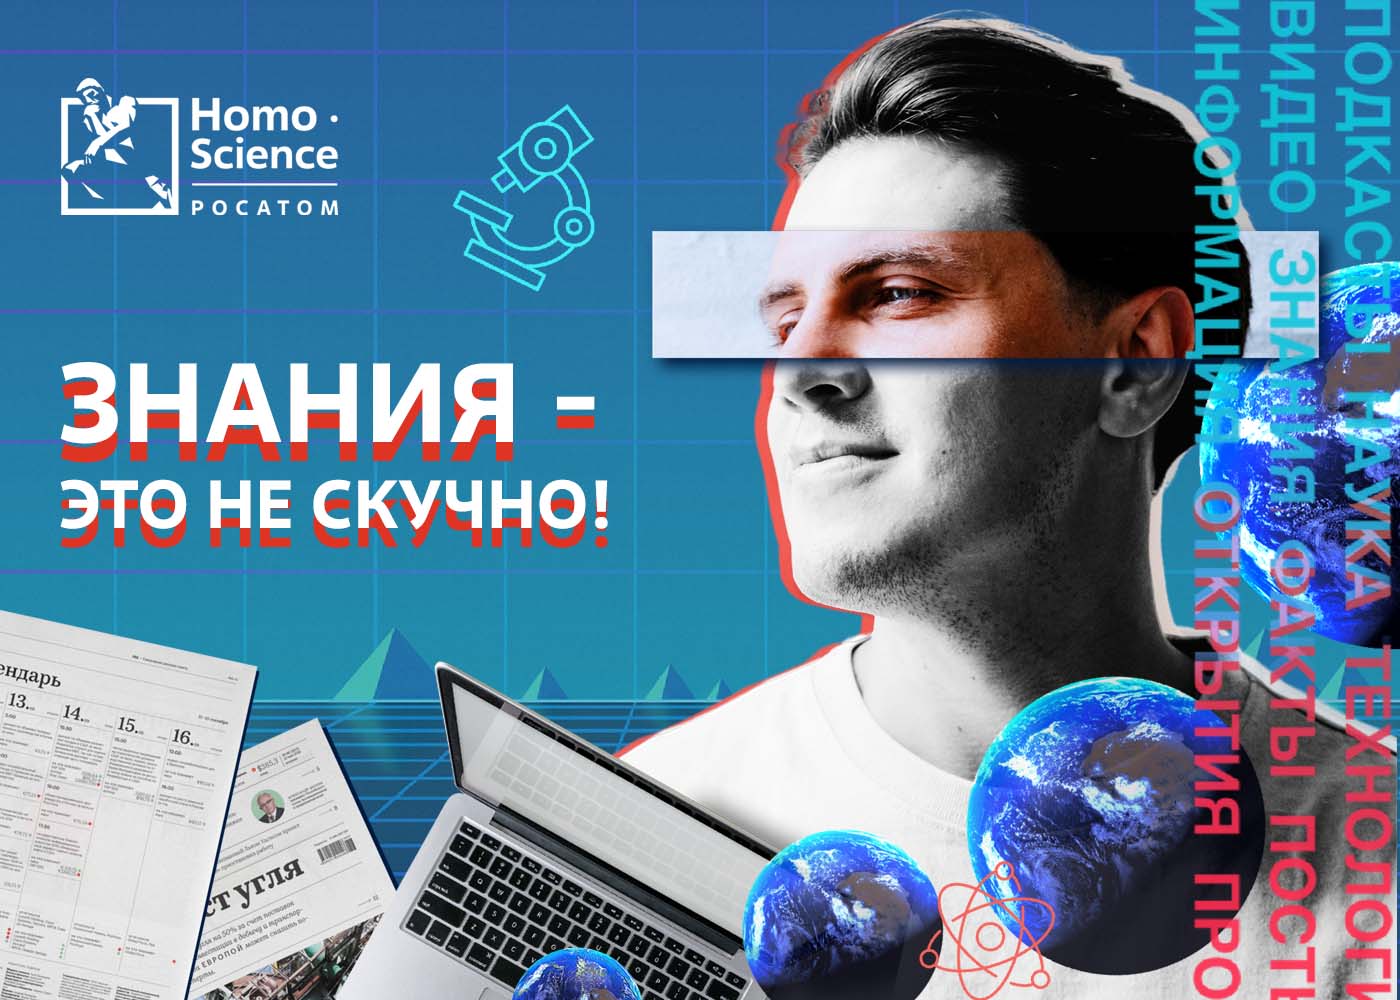 Госкорпорация «Росатом» представляет просветительский онлайн-проект Homo Science